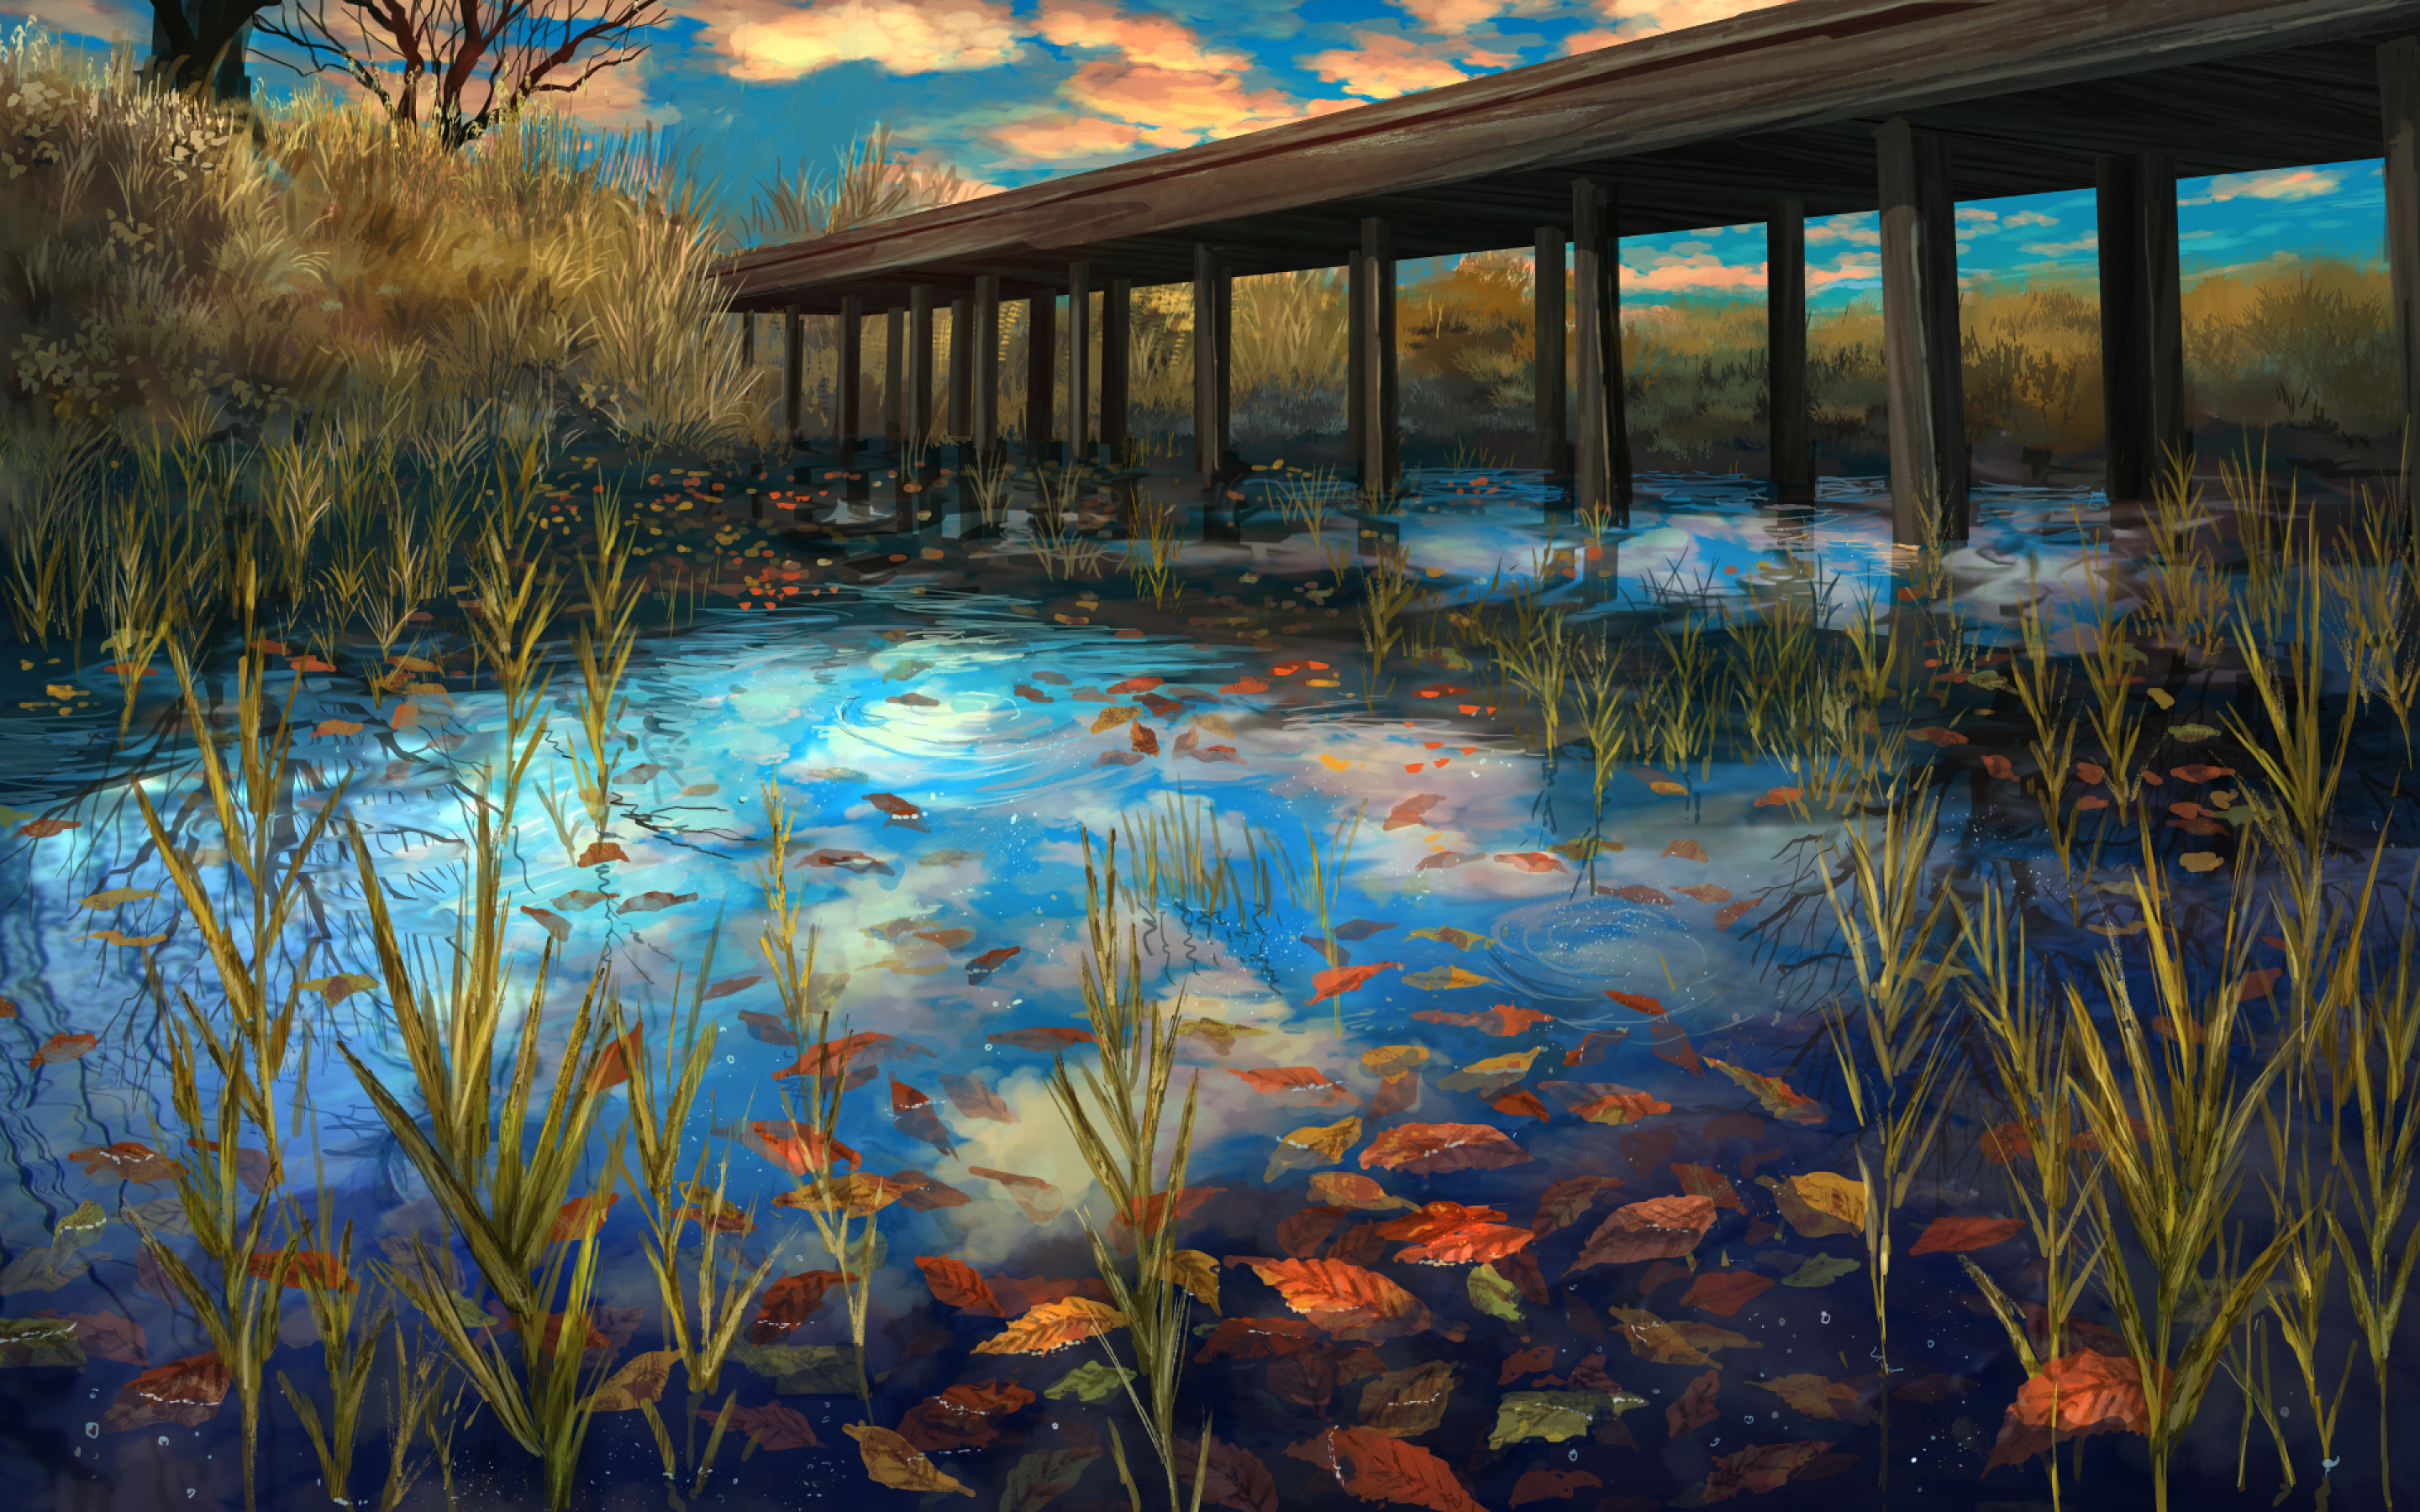 Download 2880x1800 Anime Landscape, River, Bridge, Autumn, Scenic Wallpaper for MacBook Pro 15 inch